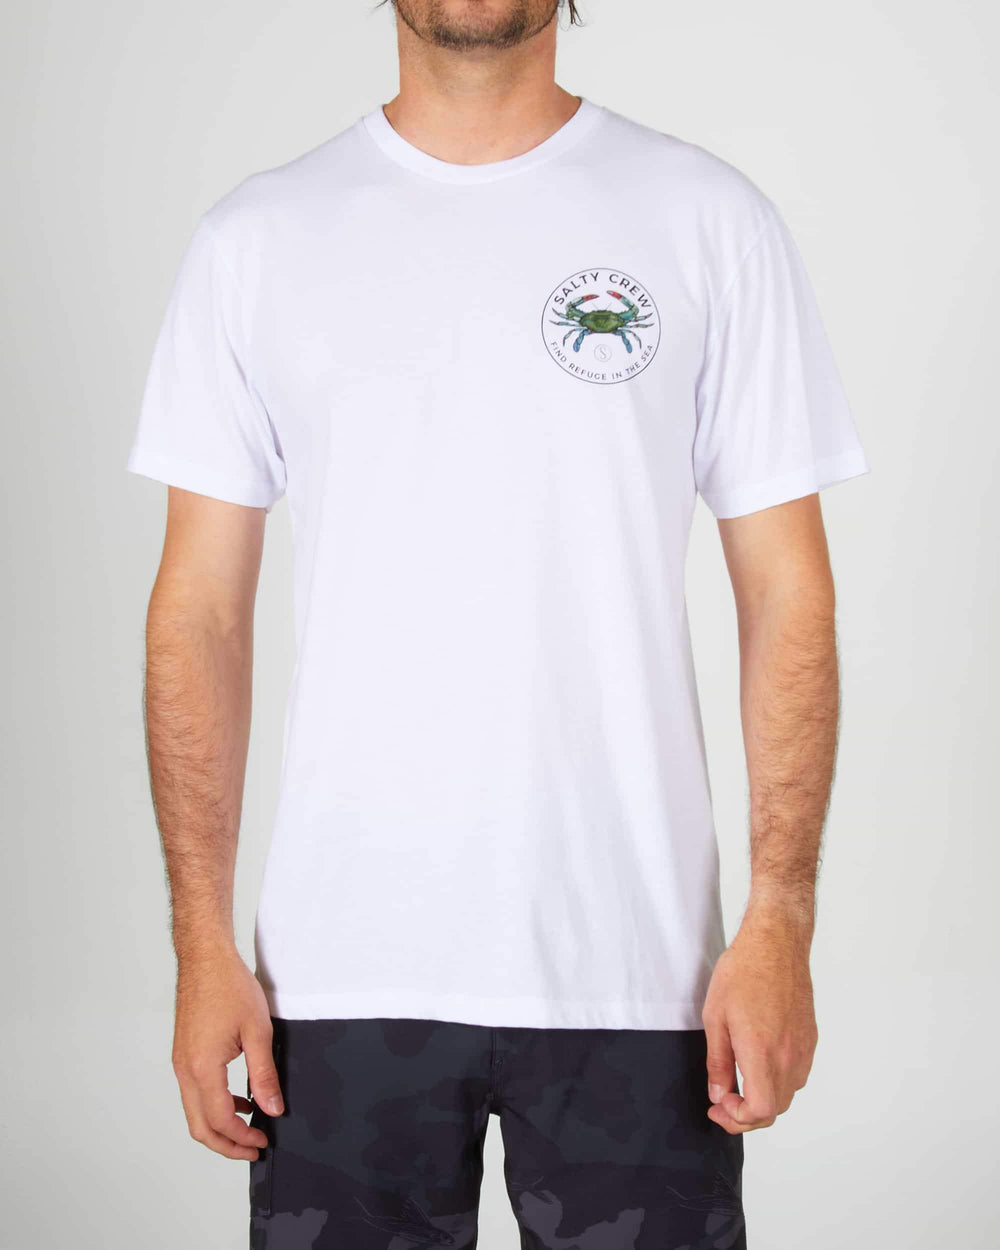 Blue Crabber T-Shirt | S4 Supplies